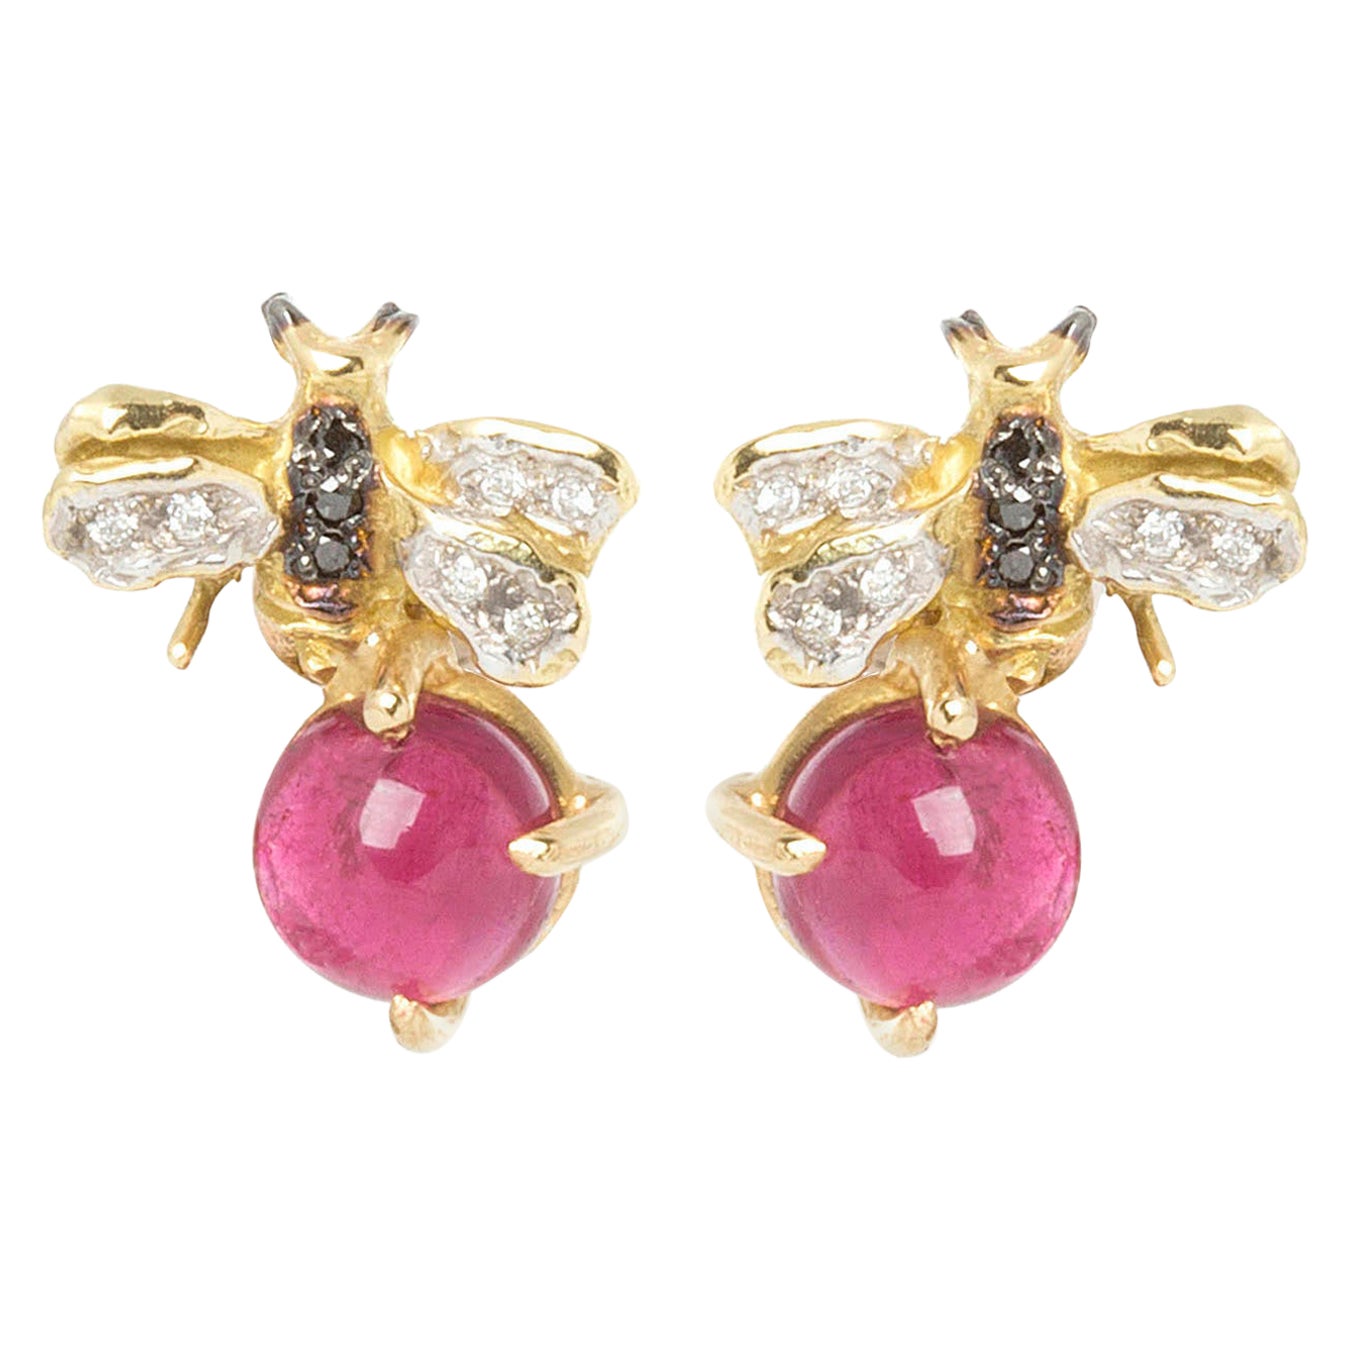 Clous d'oreilles en or 18 carats avec tourmaline rose de 3,50 carats et diamants de 0,10 carat